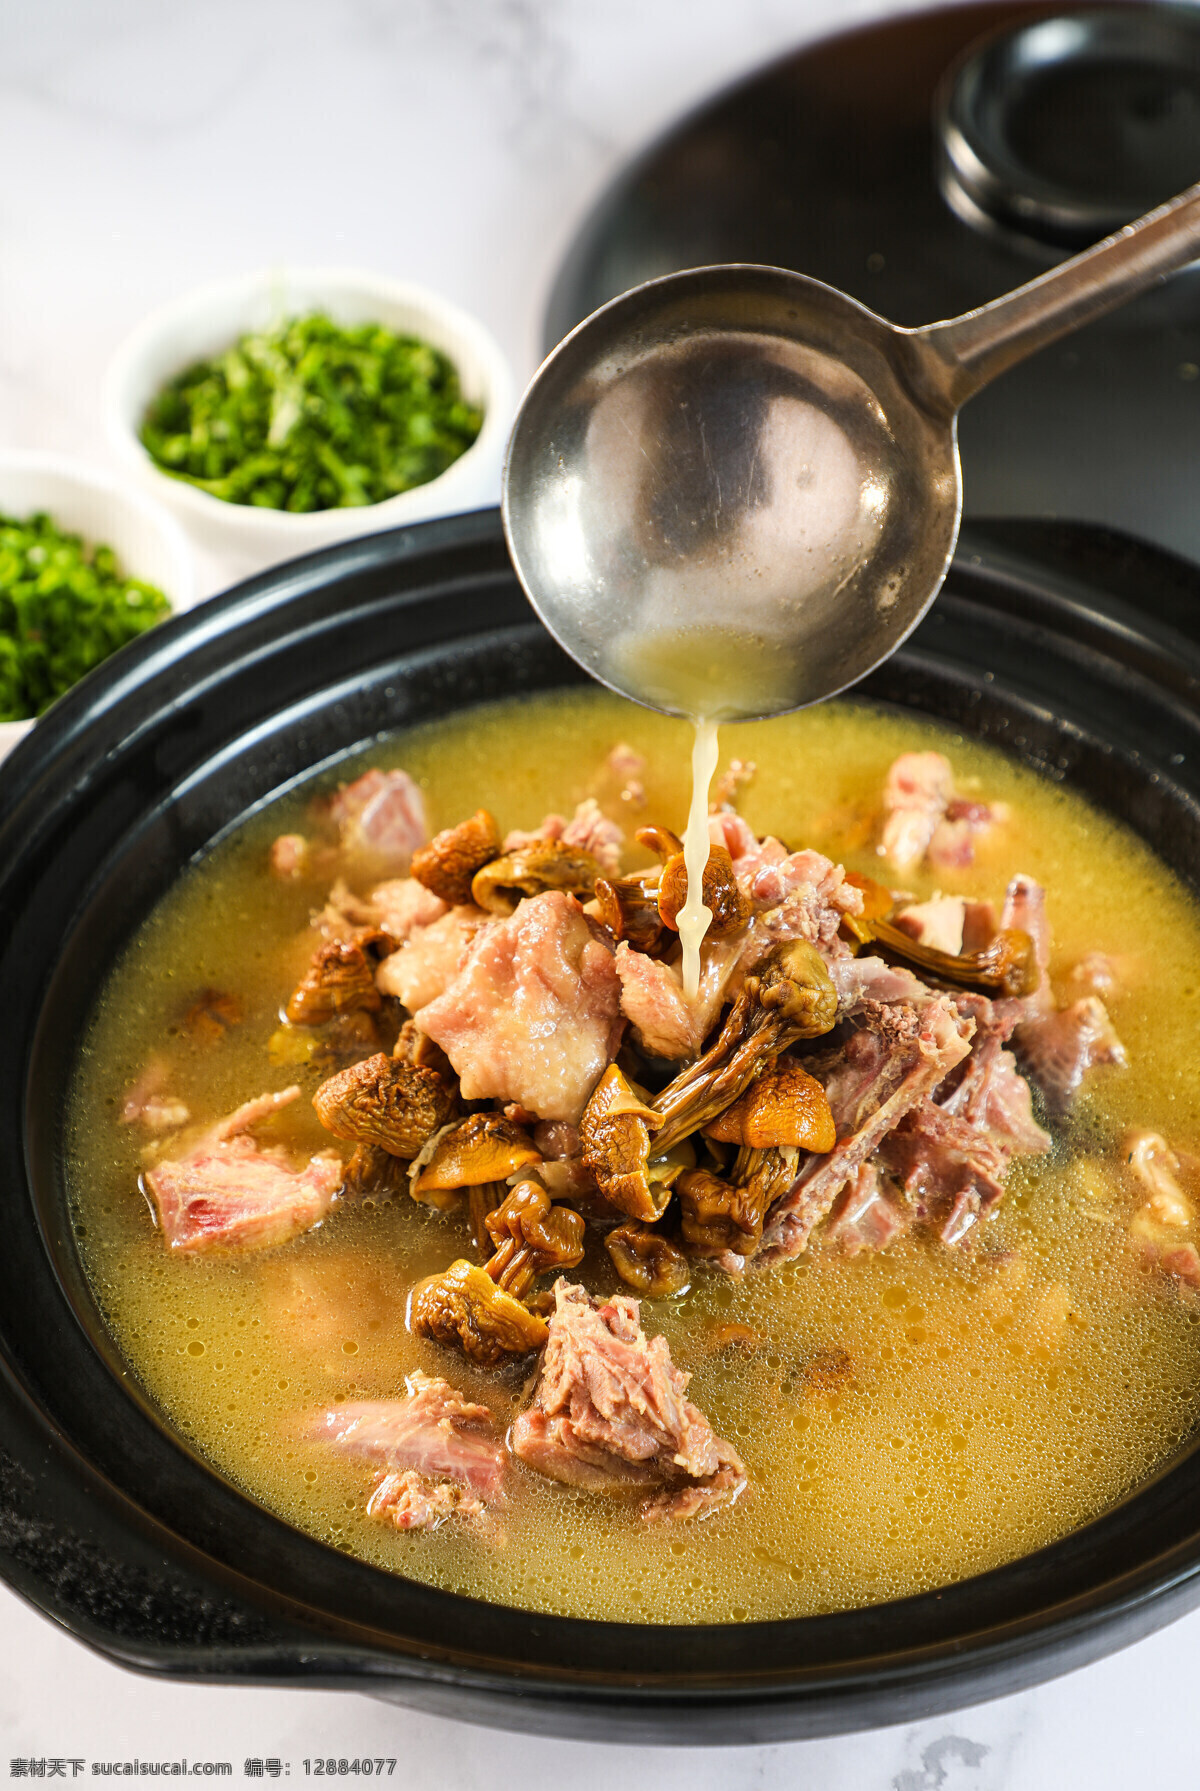 野 菌 老 鸭汤 传统 美味 养生 野生菌 老鸭汤 养生汤 餐饮美食 传统美食